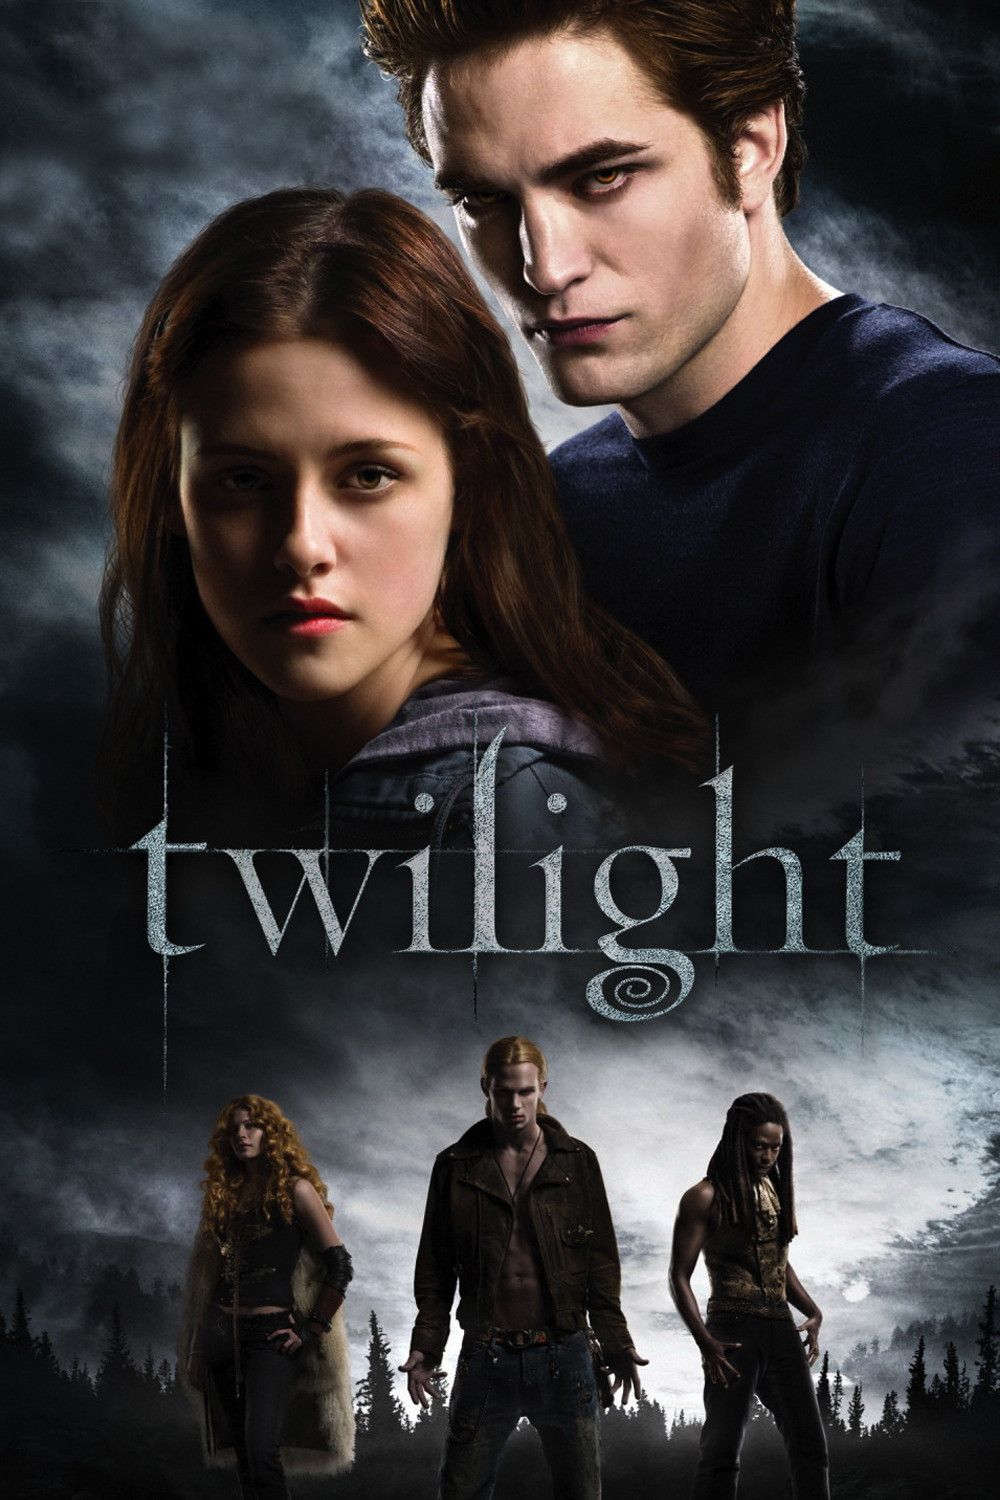 Affiches Posters Et Images De Twilight Chapitre 1 2008